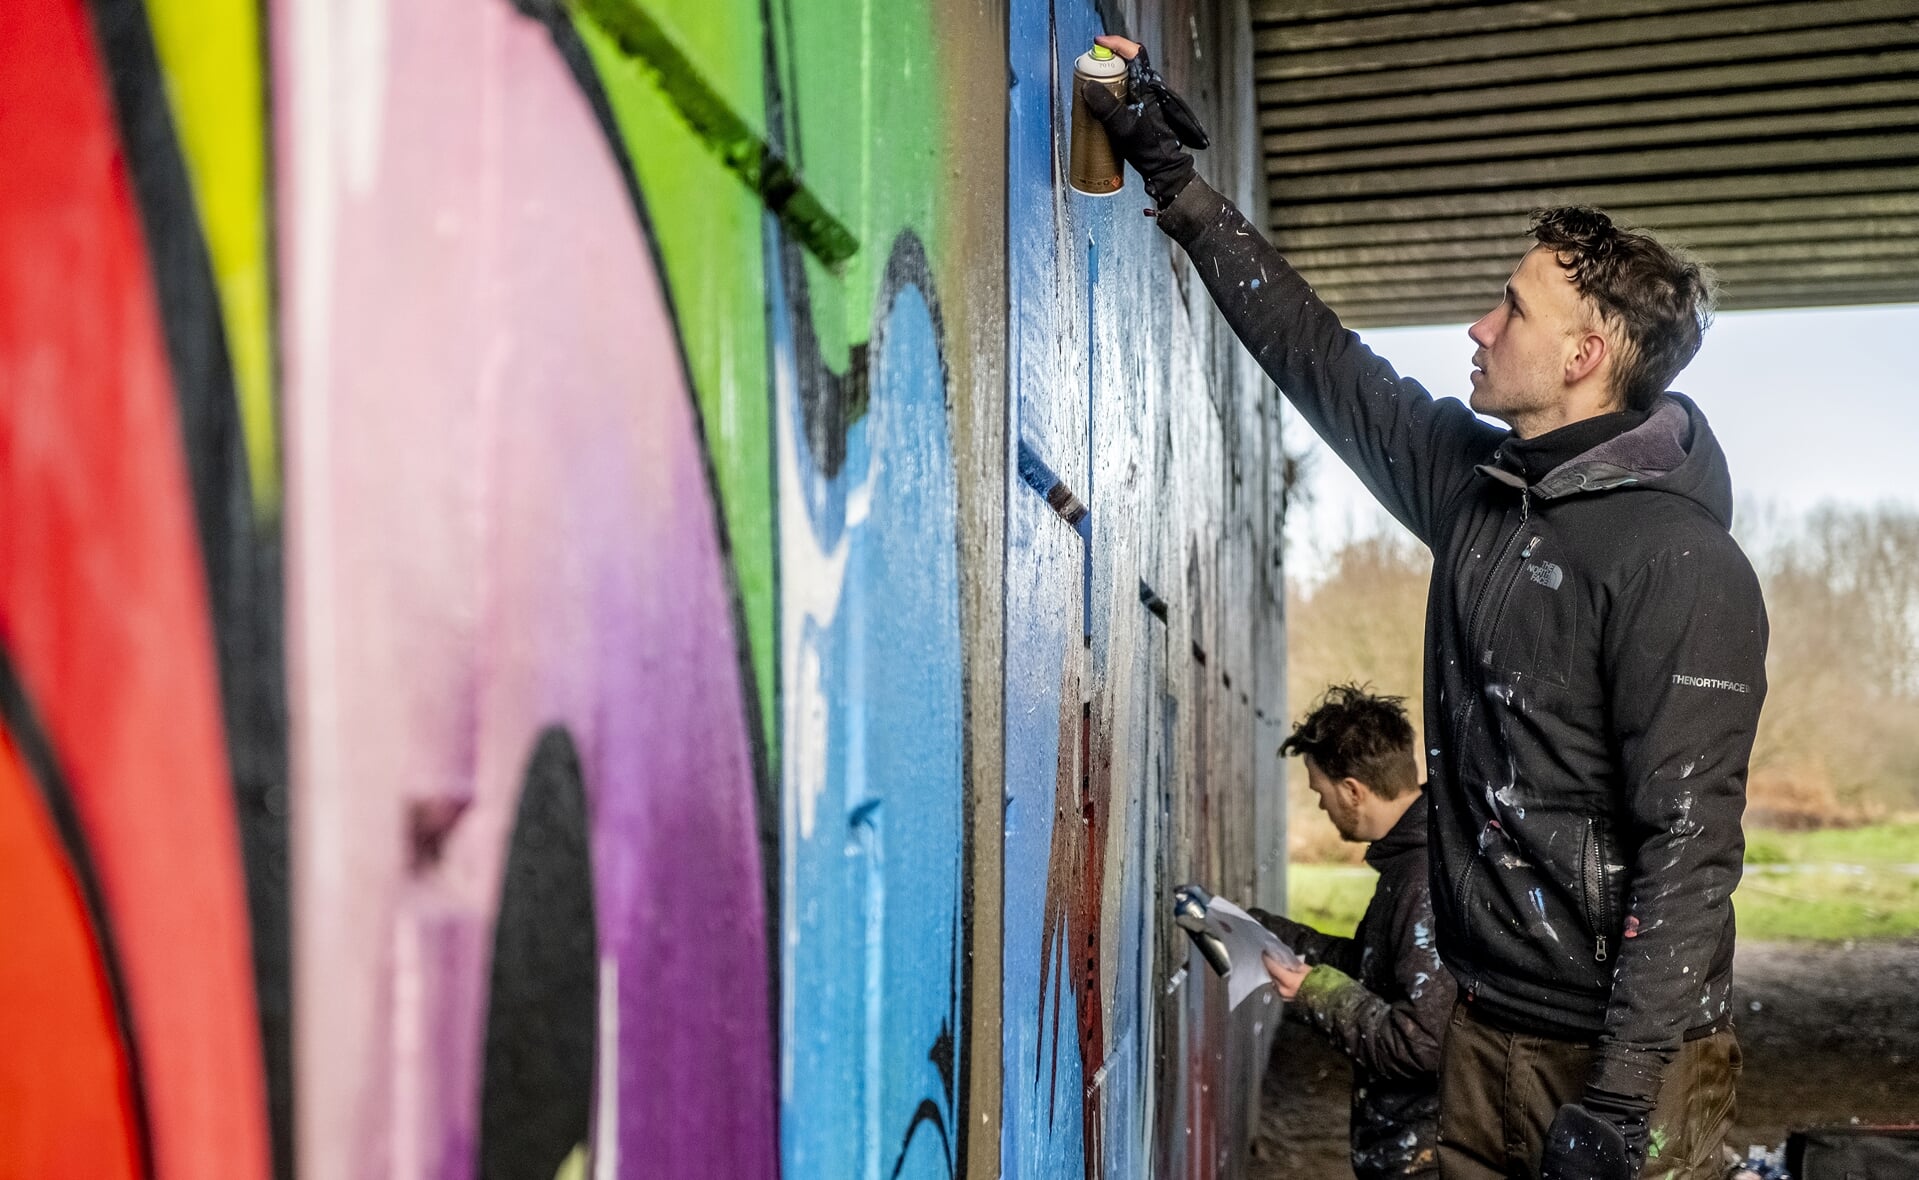 Jan Pennings (op de voorgrond) van stichting Tunnel Vision Boxtel maakten in opdracht van het team van ‘Boxtel – 2020 in 366 verhalen’ een graffitikunstwerk. Het fraaie resultaat is te zien in de verhalenbundel die begin 2021 verschijnt. (Foto: Peter de Koning).